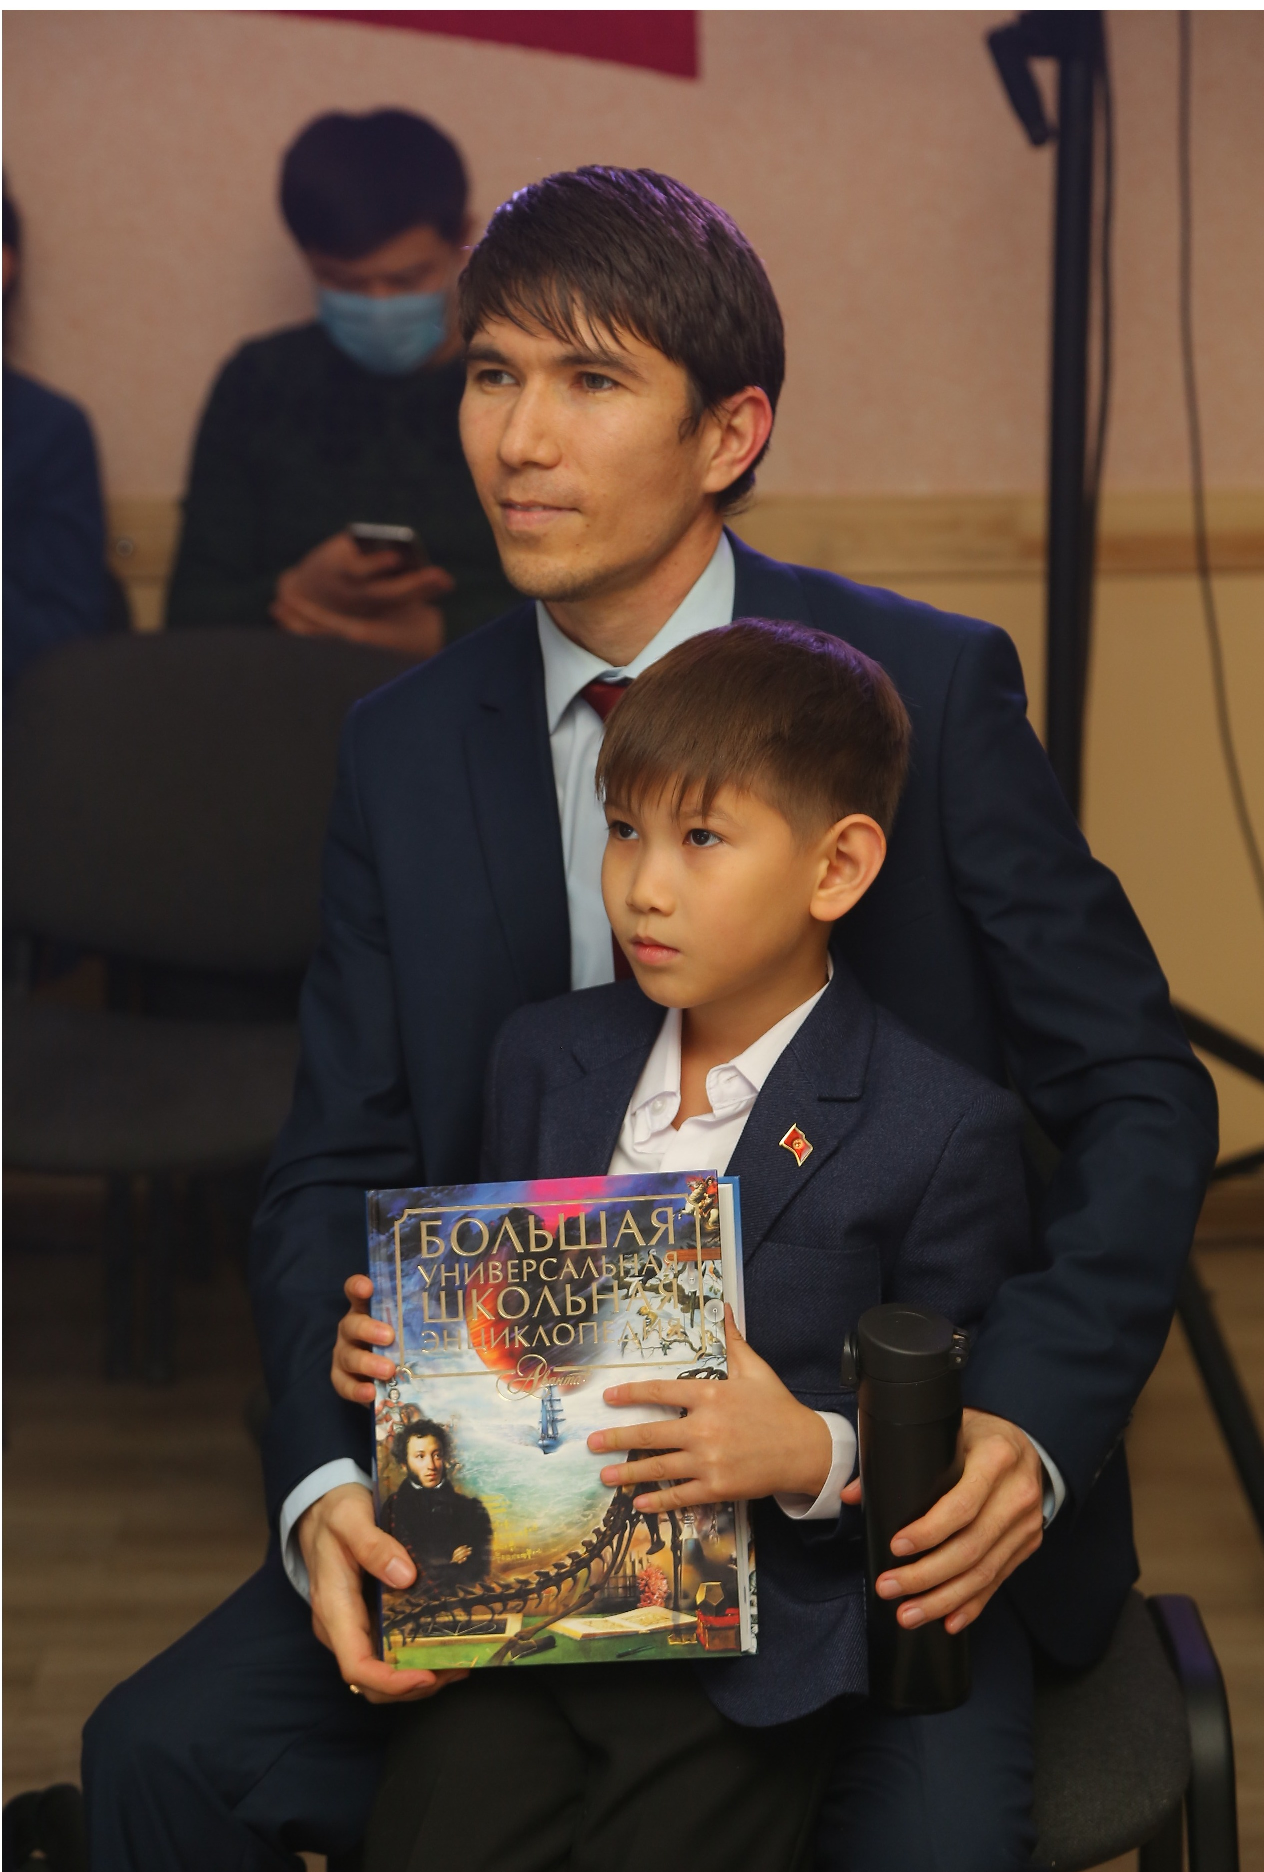 "Спасибо, Владимир Владимирович". Путин подарил свой портрет ребенку из Бишкека, просившему акции "Газпрома". Фото: Фейсбук